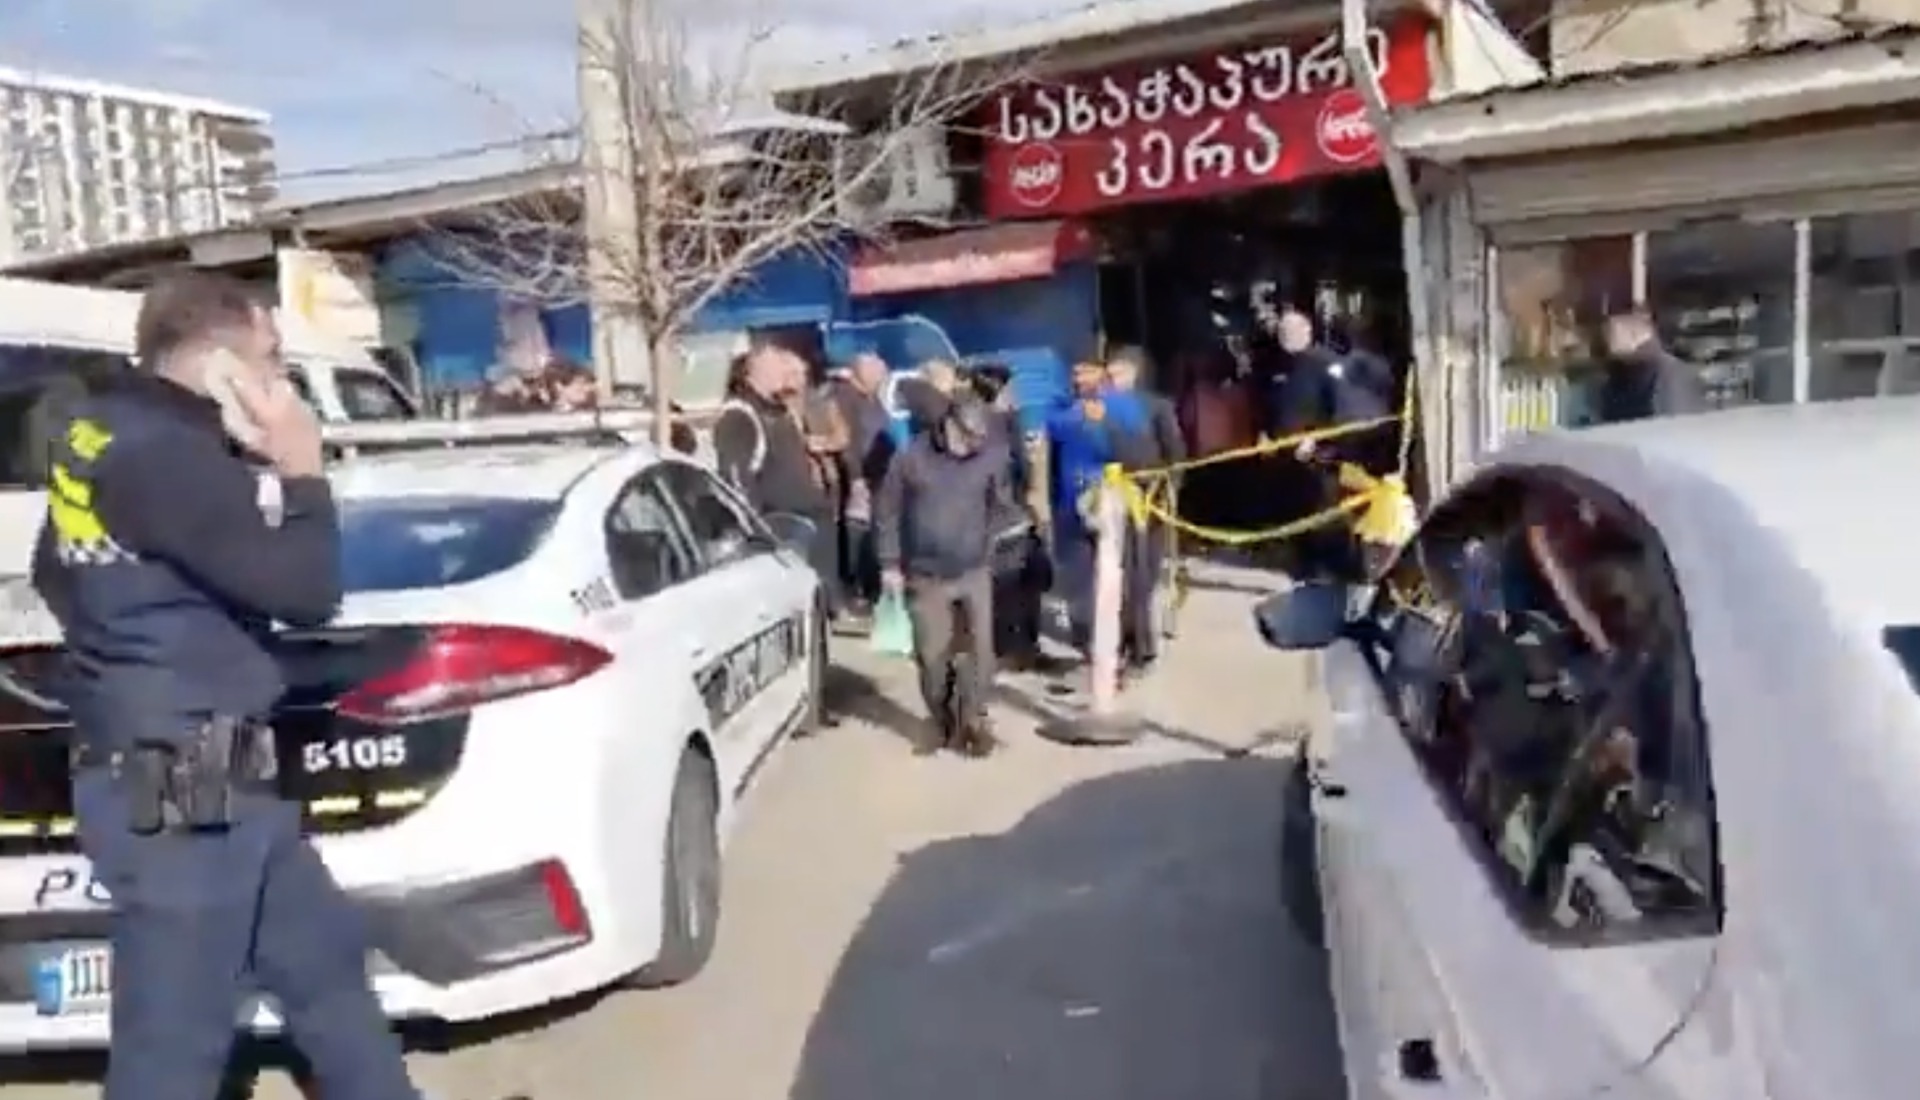 Atac armat într-o piață din Georgia. Un bărbat a deschis focul și a ucis mai multe persoane